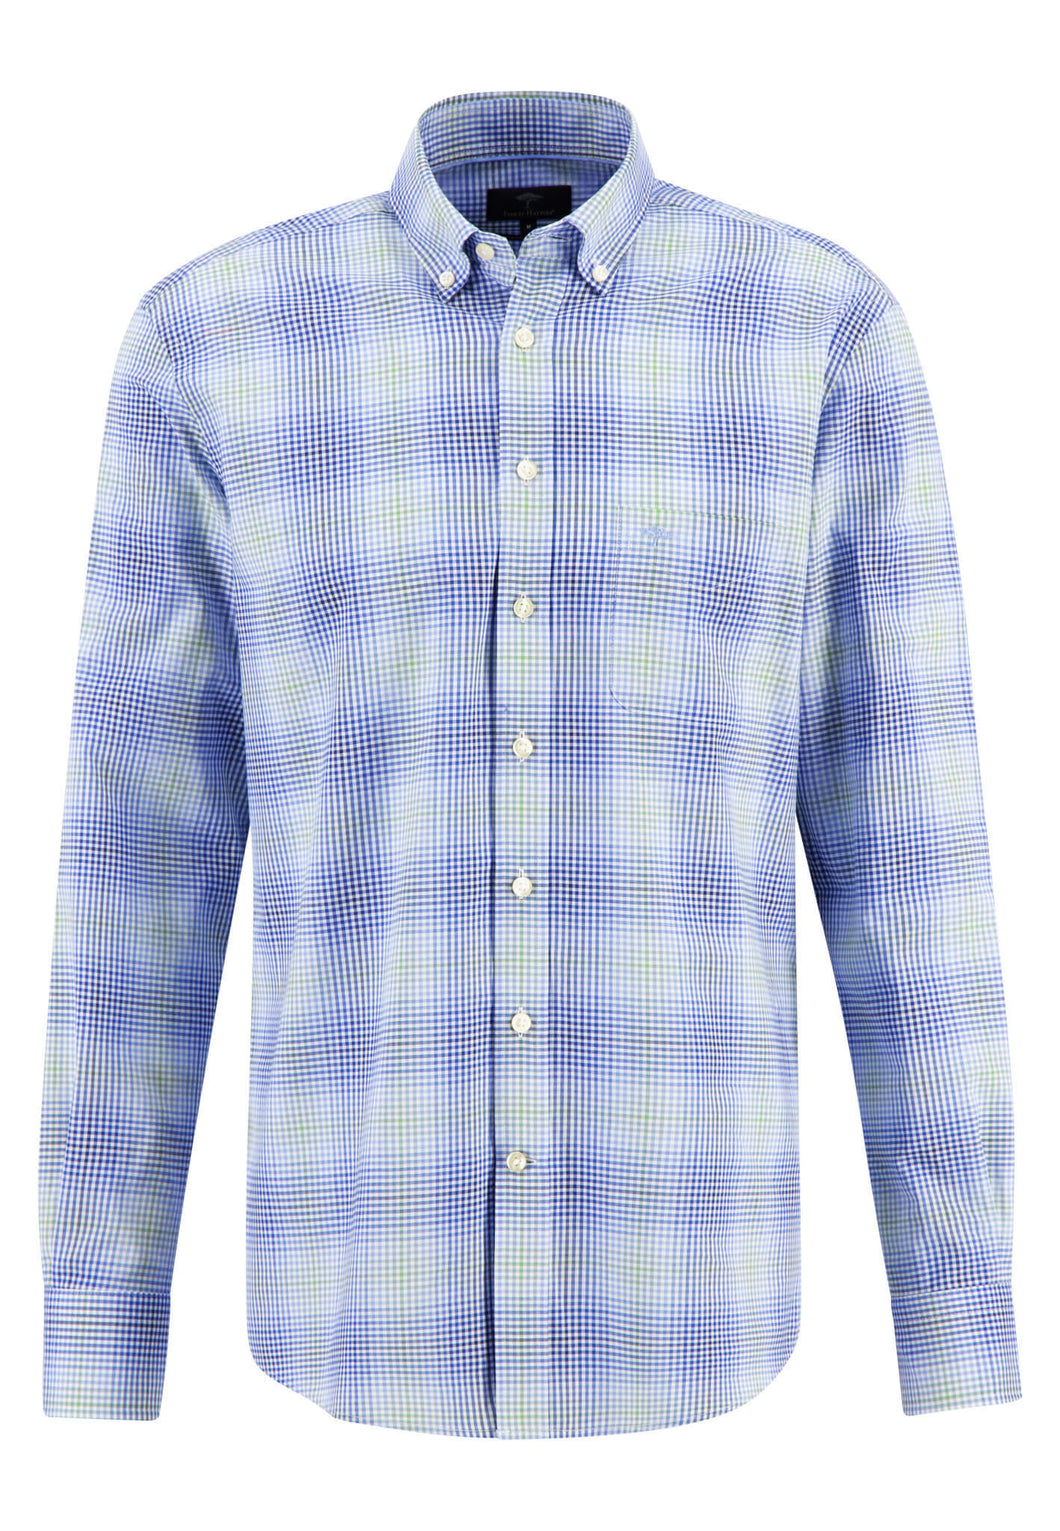 New Fynch Hatton Summer Check Cotton Long Sleeve Shirt